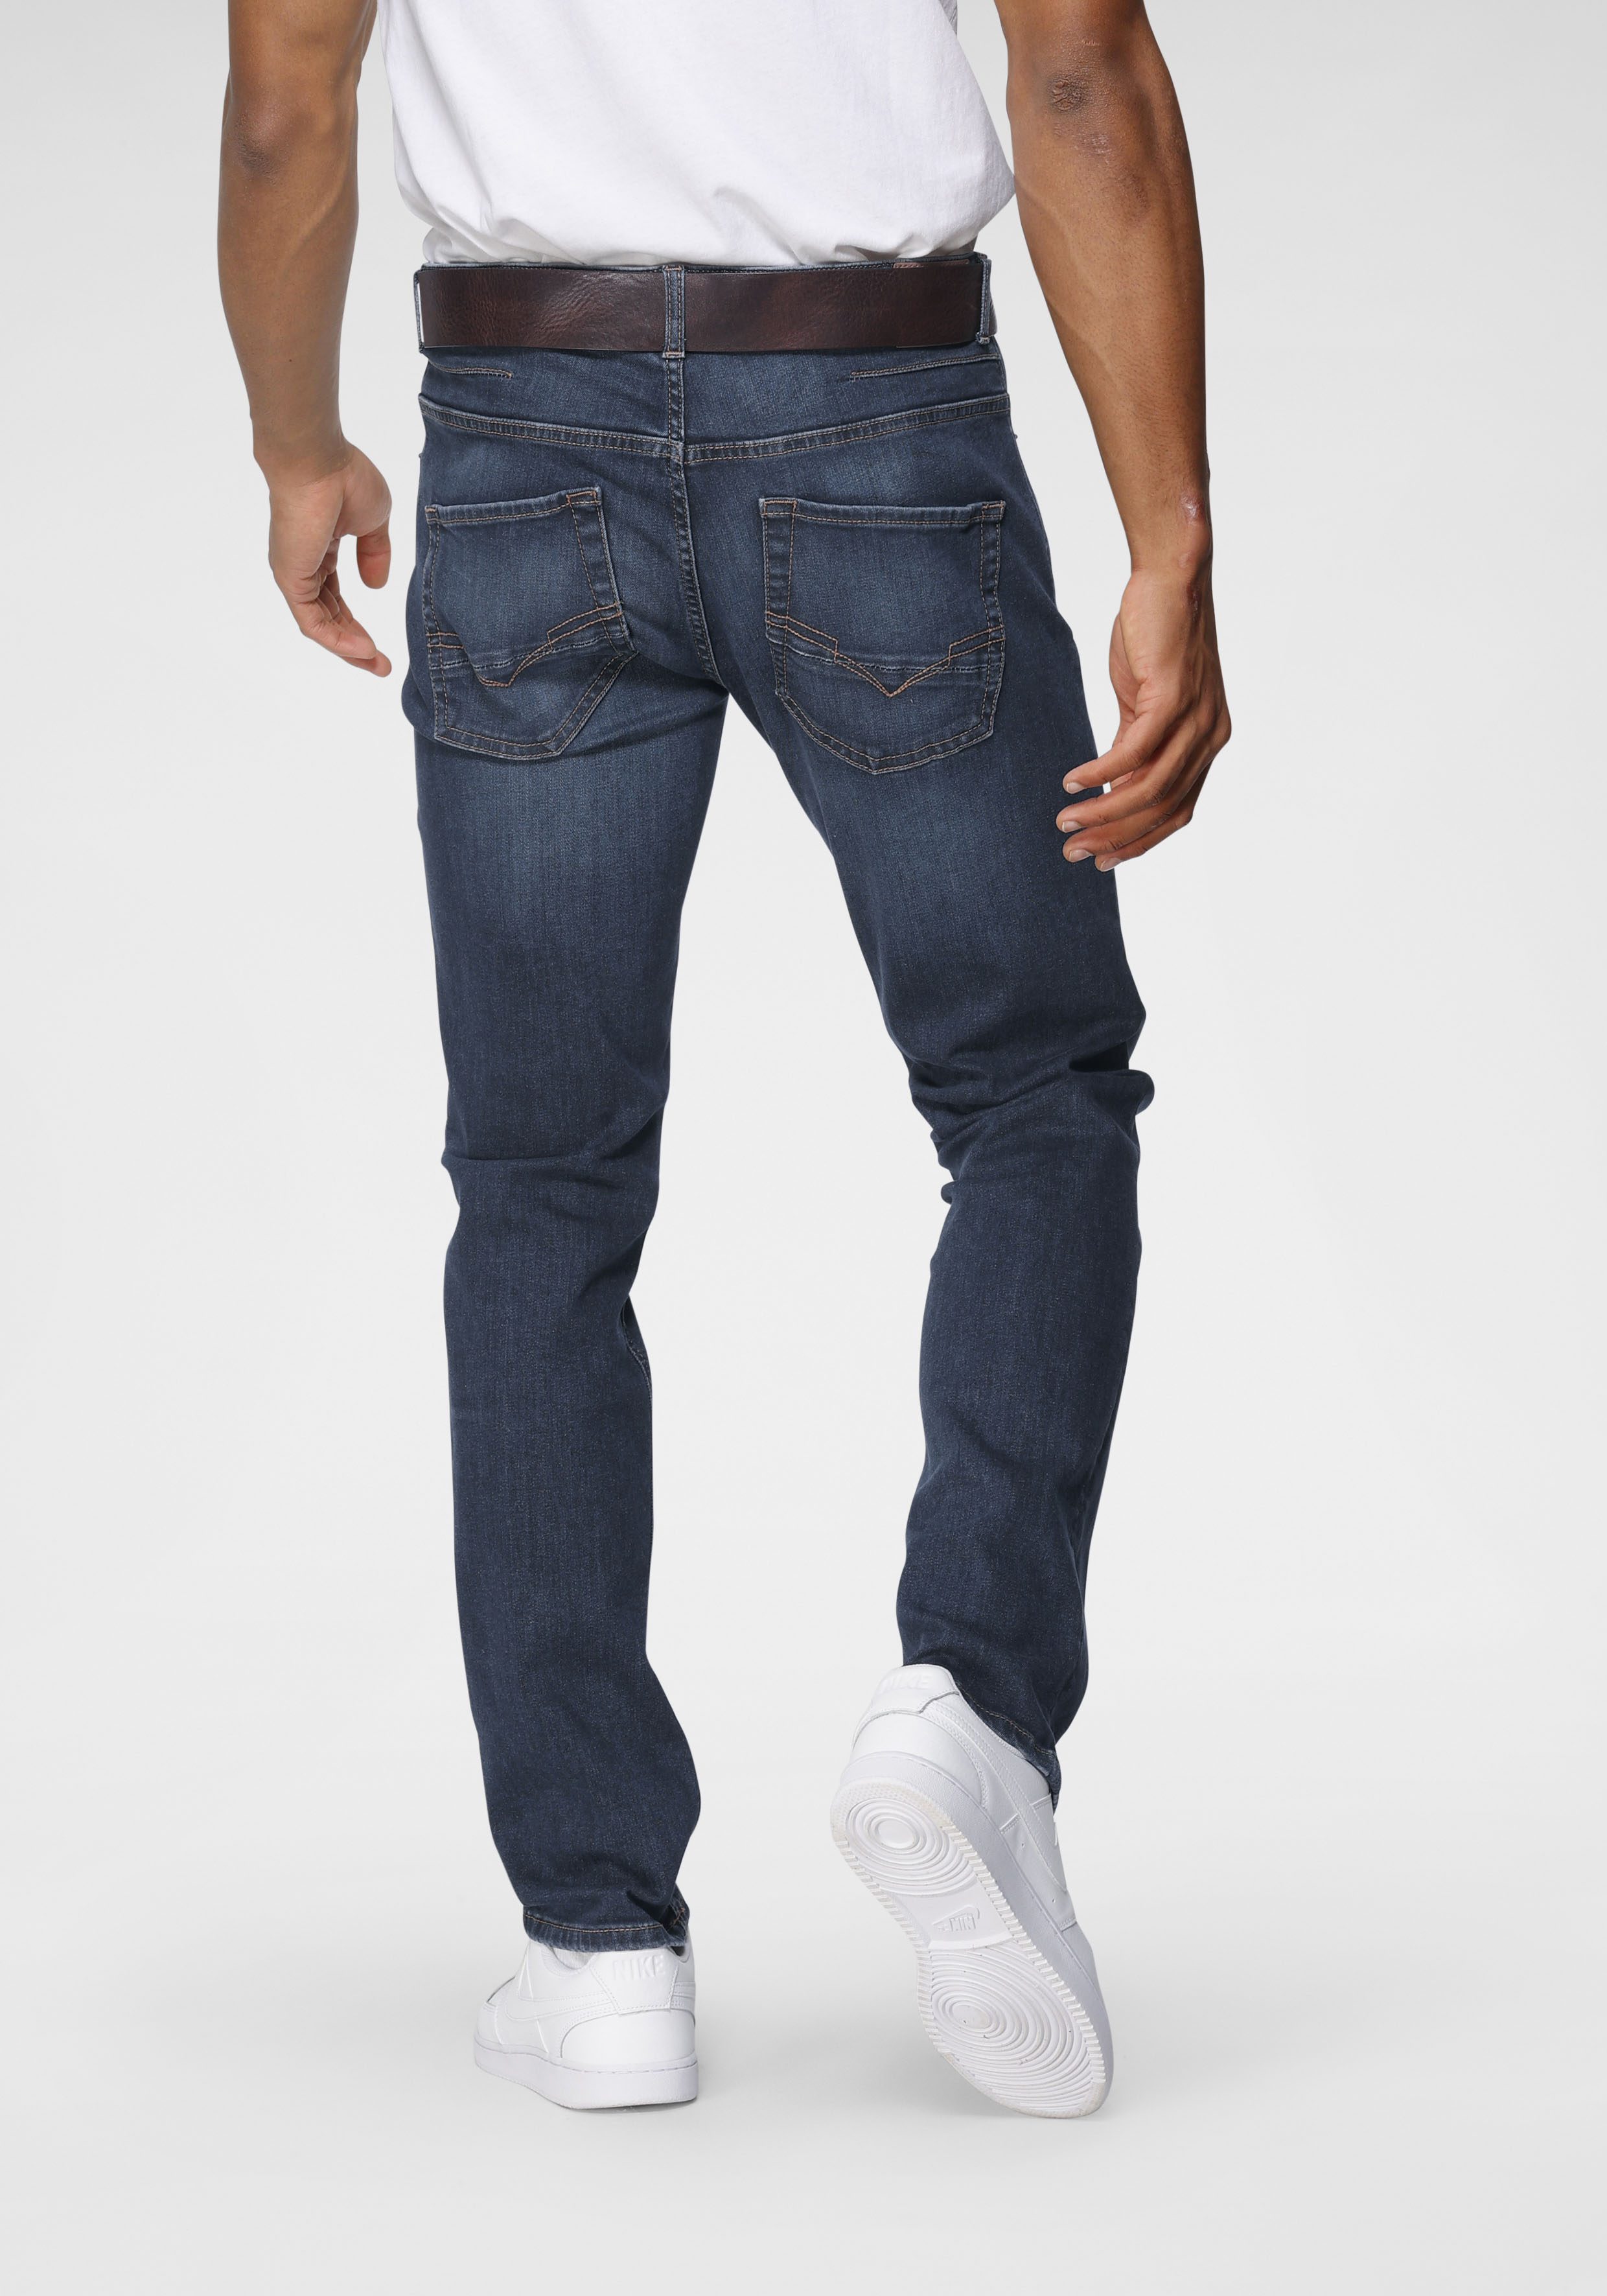 H.I.S Straight-Jeans "DALE", Ökologische, wassersparende Produktion durch O günstig online kaufen